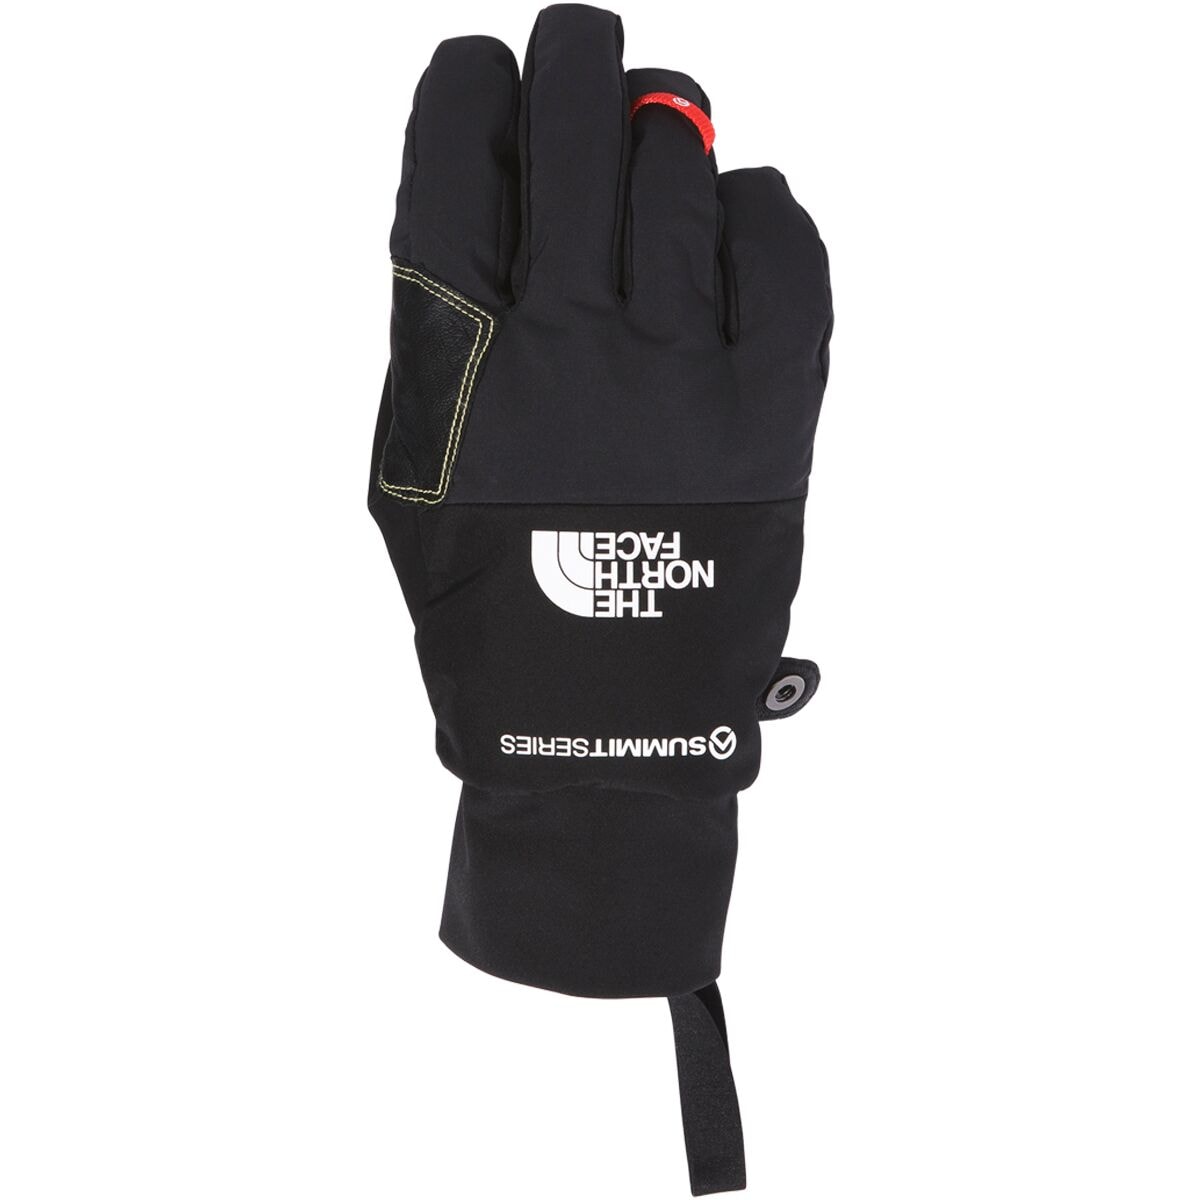 The North Face Summit Alpine Glove